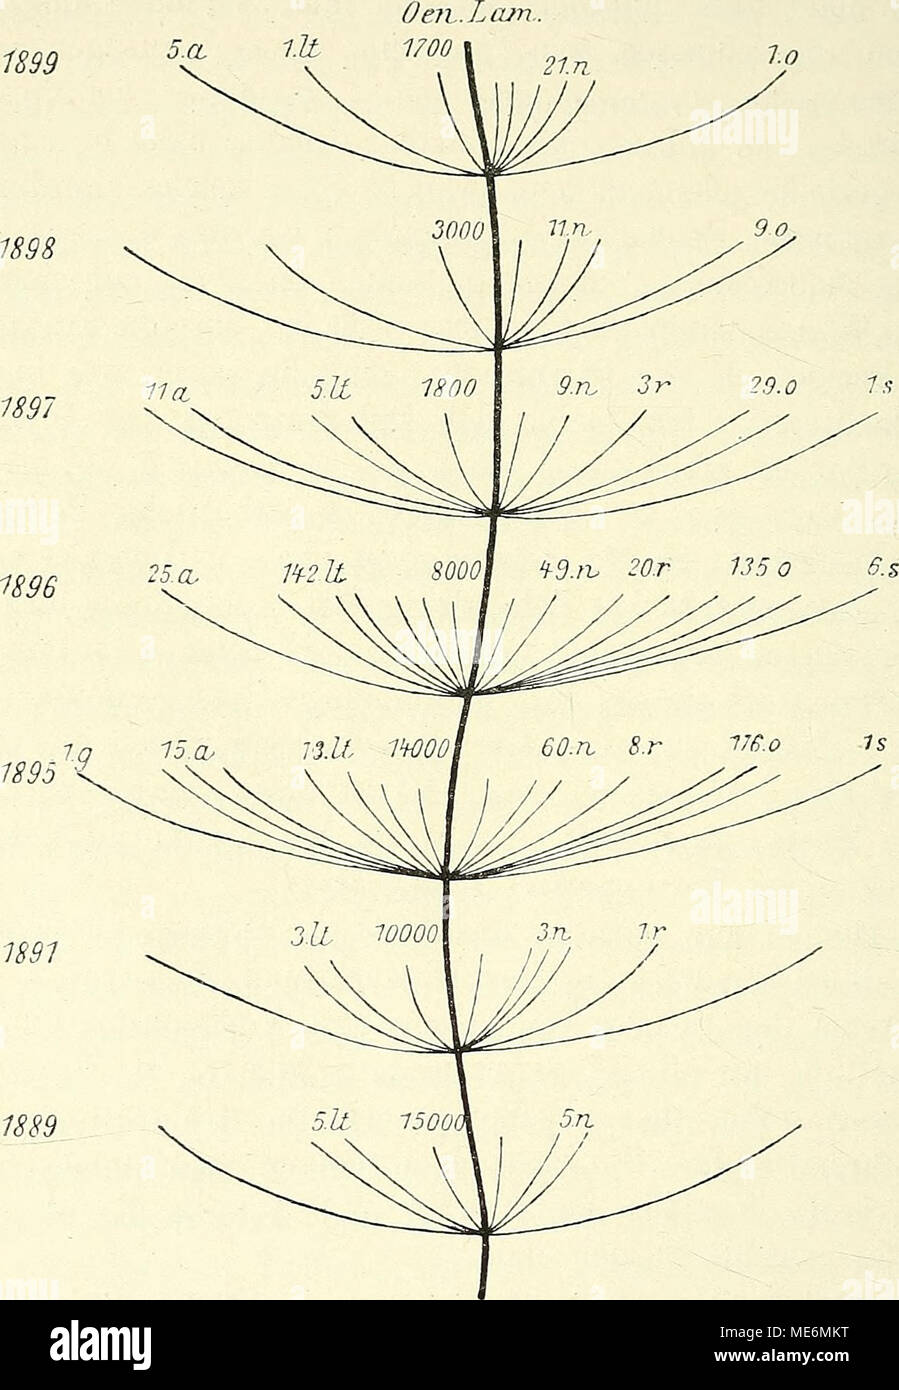 . Die mutationstheorie. Versuche und beobachtungen über die entstehung von arten im pflanzenreich . Fig. 158. Stammbaum von Oenothera LamarcMana, die jährliche Entstehung neuer Arten im Versuchsgarten in den Jahren 1889—1899 darstellend, g O. gigas, a 0. al- bida, lt O. lata, n 0. nanella, r 0. rubrinervis, o 0. oblonga, s O. scintillans. Die den Buchstaben vorgesetzten Zahlen bedeuten die Anzahl, in der die betreffende Art jedesmal auftrat. Die Zahlen an dem Hauptstamme geben den Umfang der Culturen an. solchen Fällen des bezeichnenden x^usdruckes „explosiv erfolgende Umgestaltungen&quot;.1 J Stock Photo